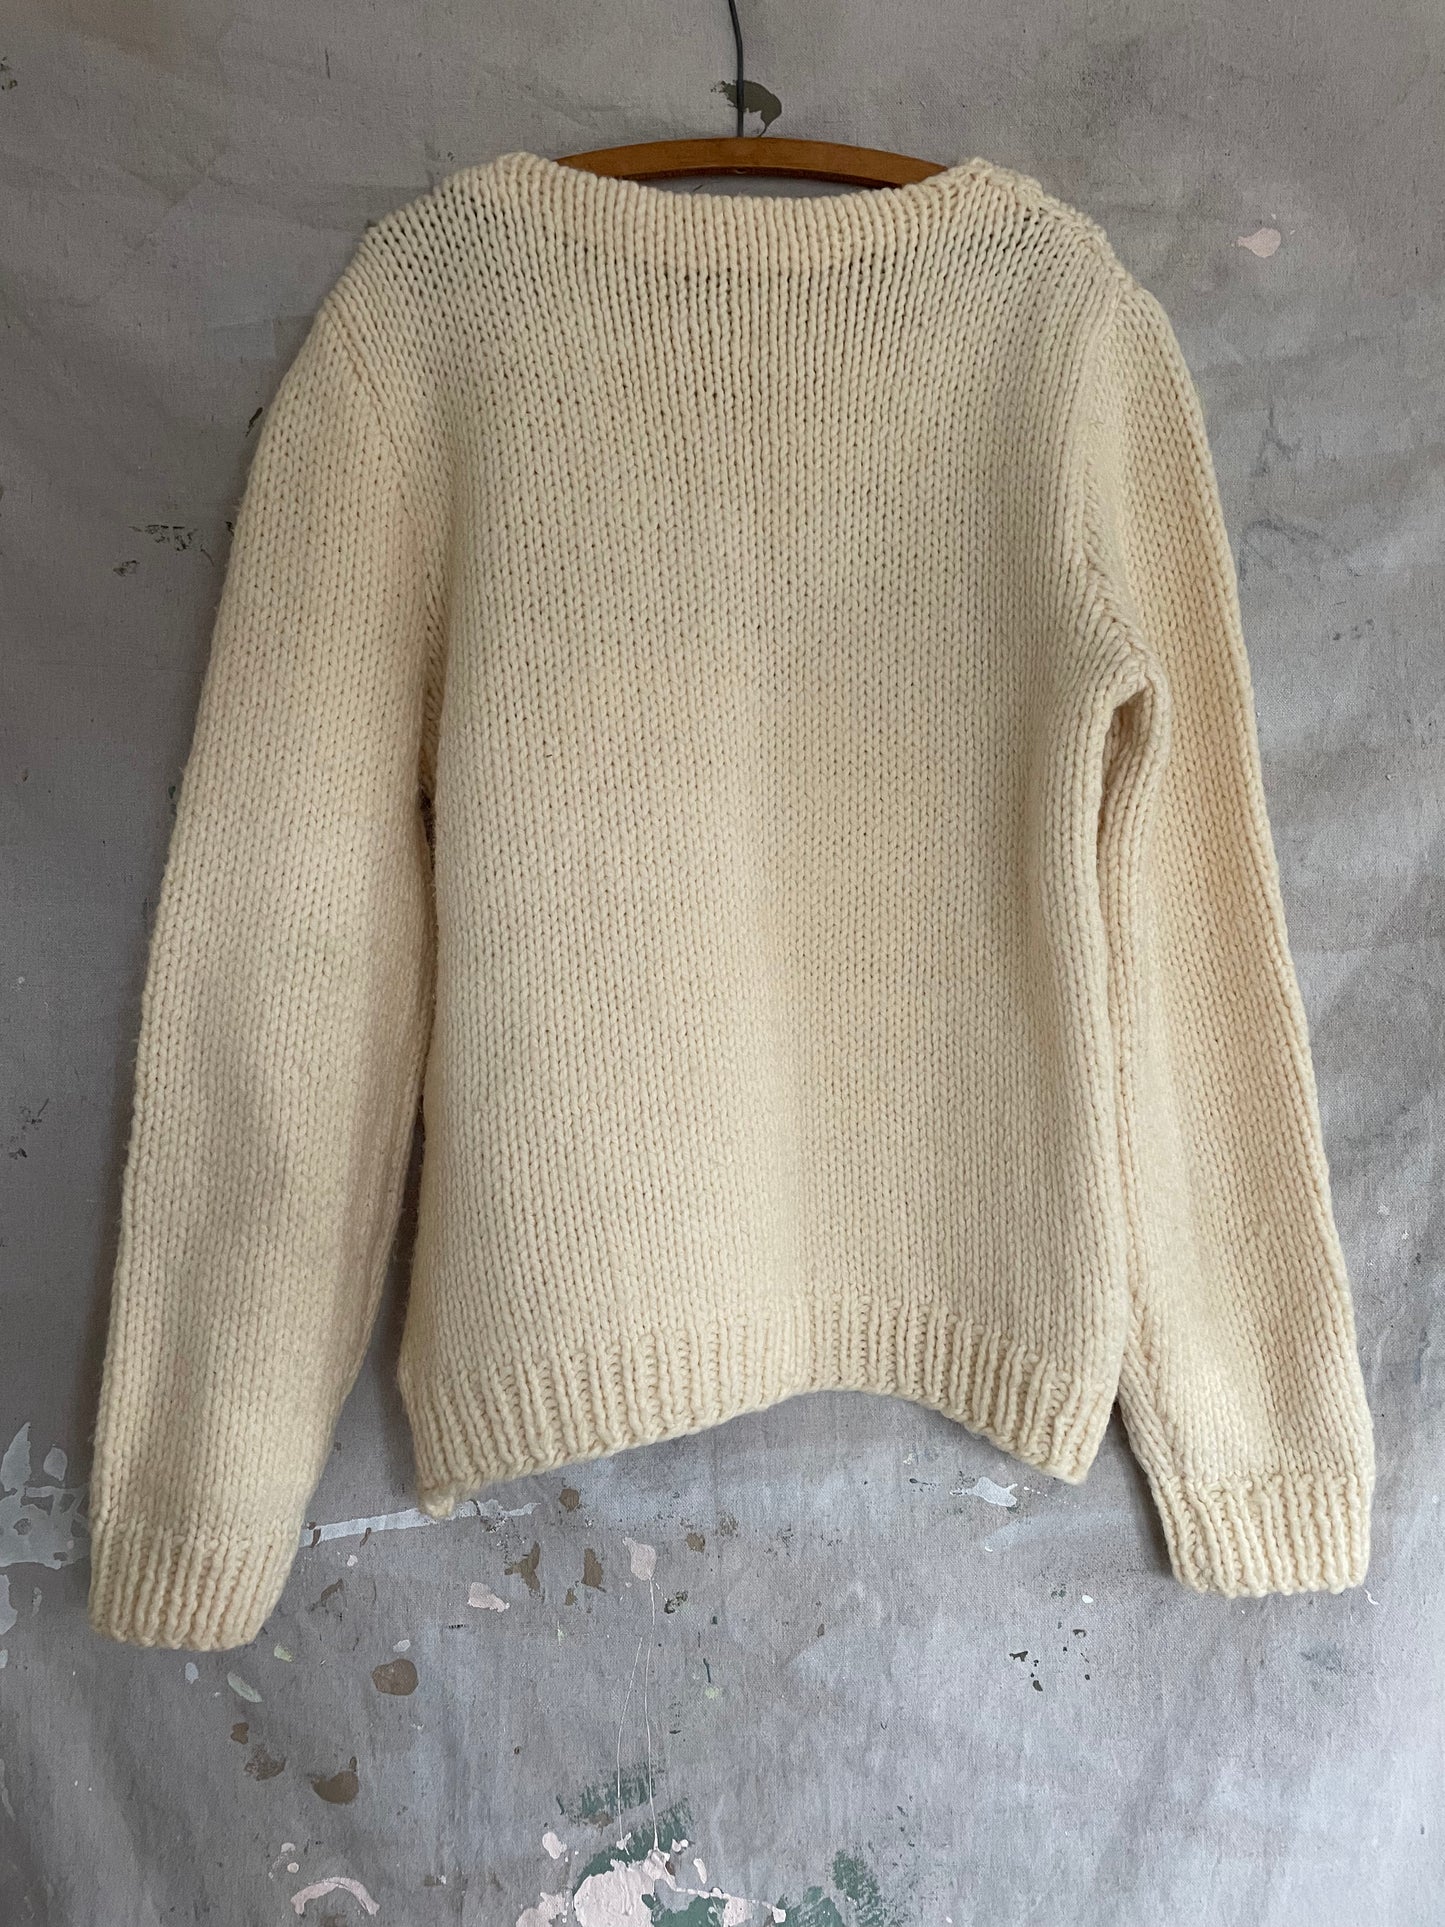 70s/80s Handknit Sweater In Ecru